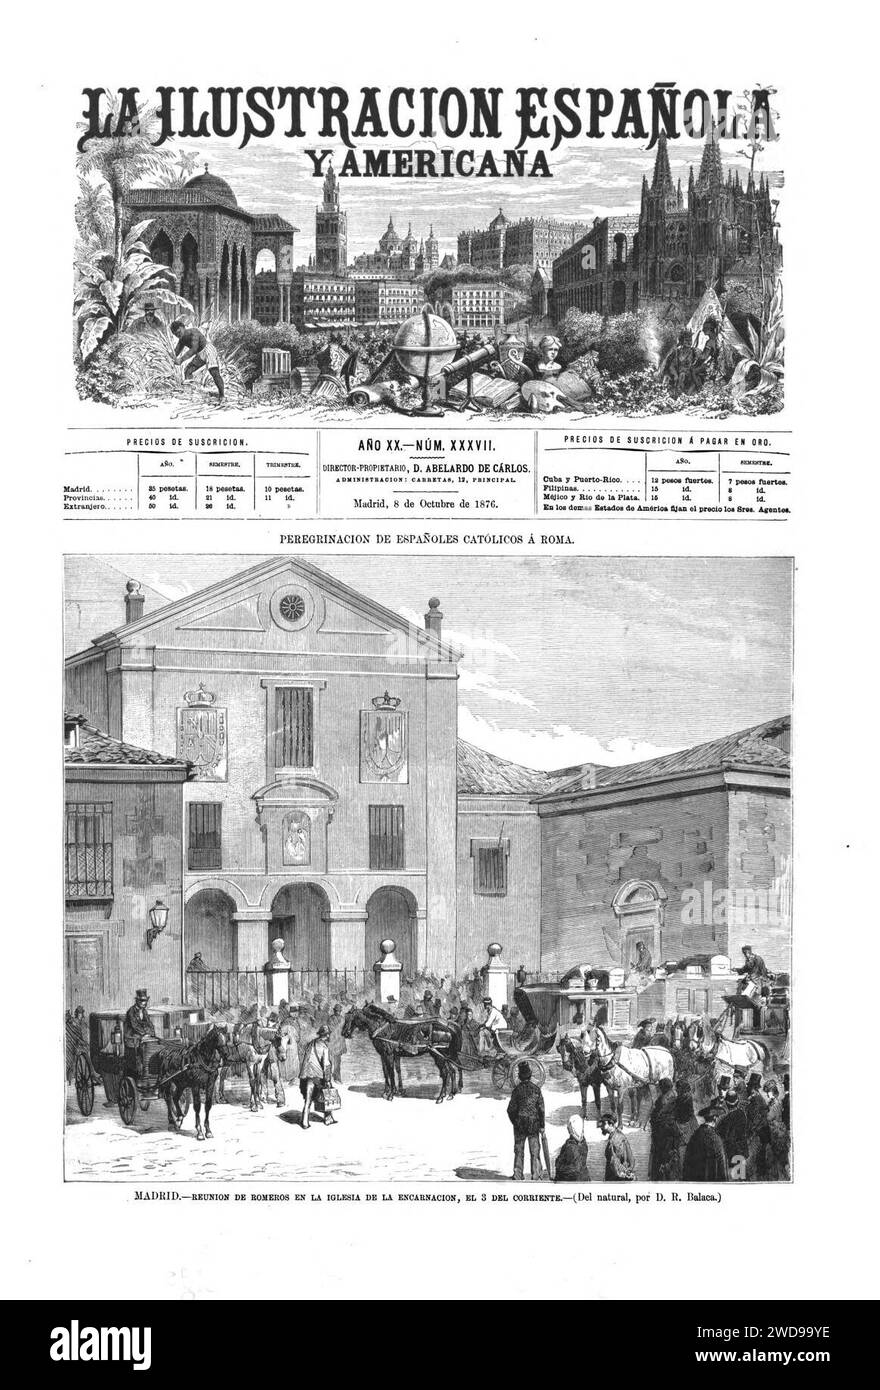 1876-10-08, La Ilustración Española y Americana, Madrid, Reunión de romeros en la iglesia de la Encarnación, el 3 del corriente. Stock Photo